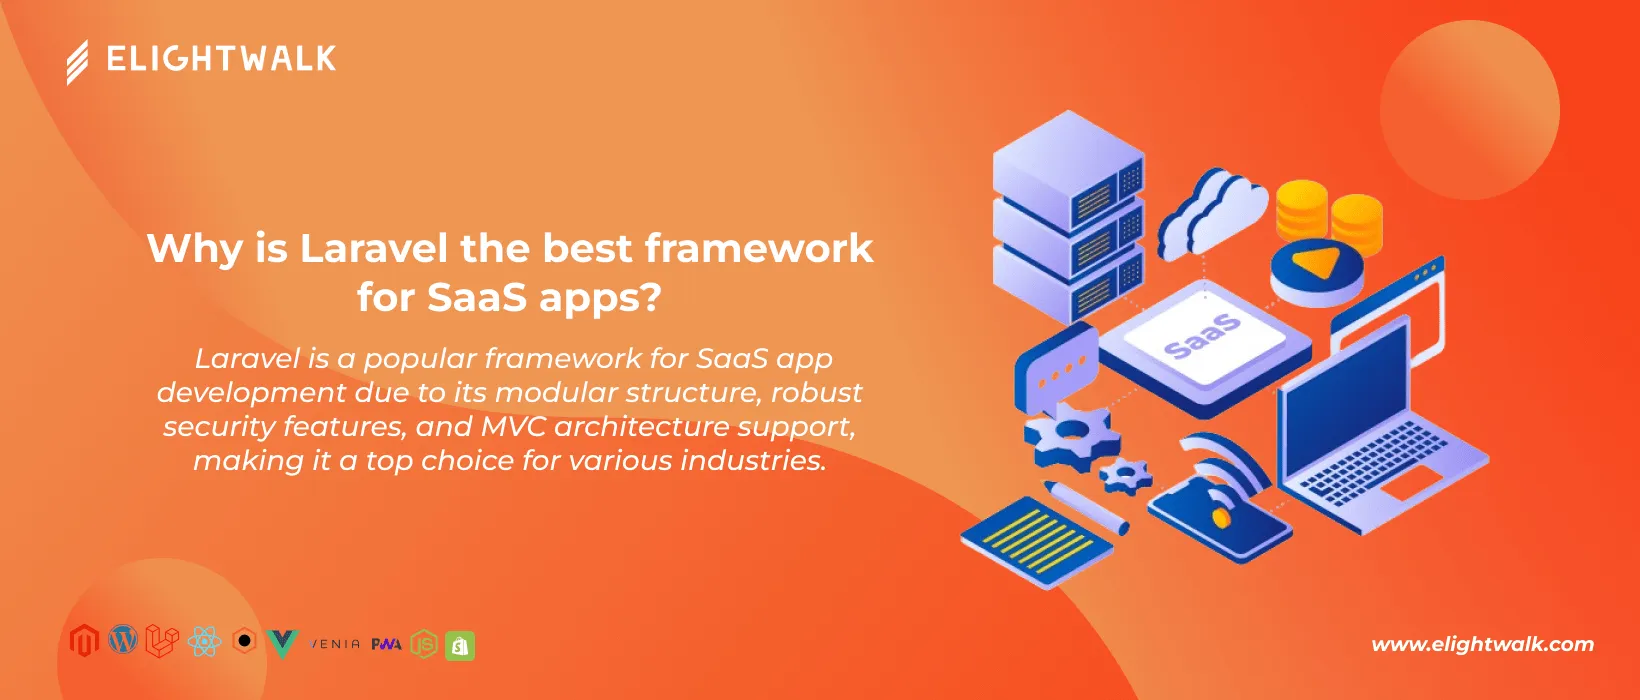 Laravel is best framework for SaaS application development